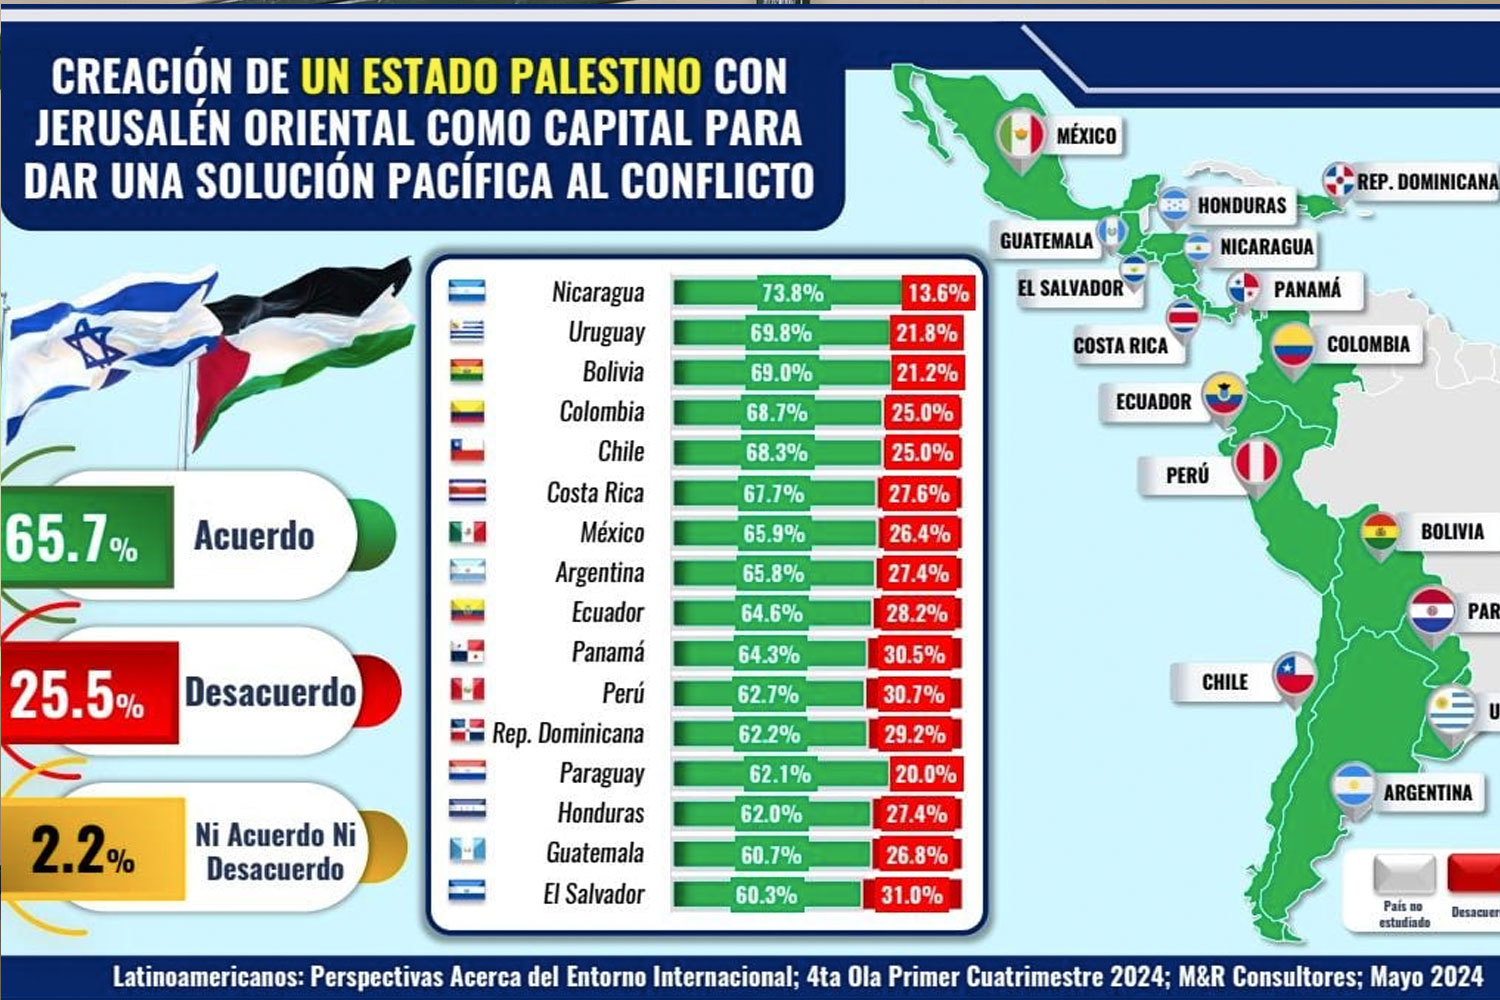 Foto: La paz del pueblo palestino, lo que desean los latinoamericanos, refleja encuesta / TN8